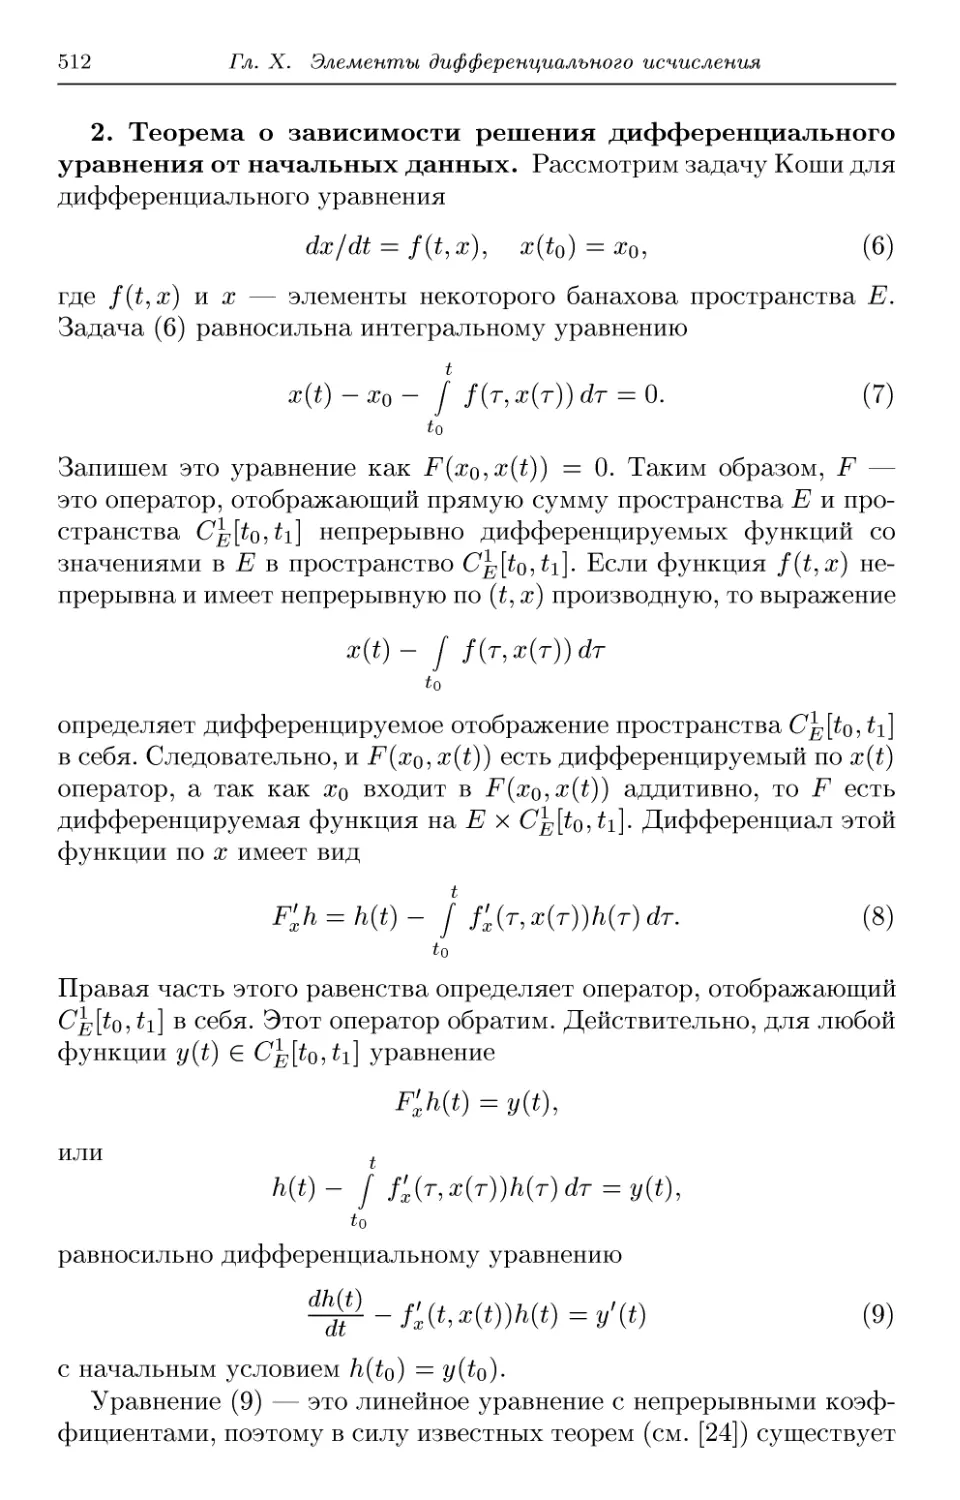 2. Теорема о зависимости решения дифференциального уравнения от начальных данных